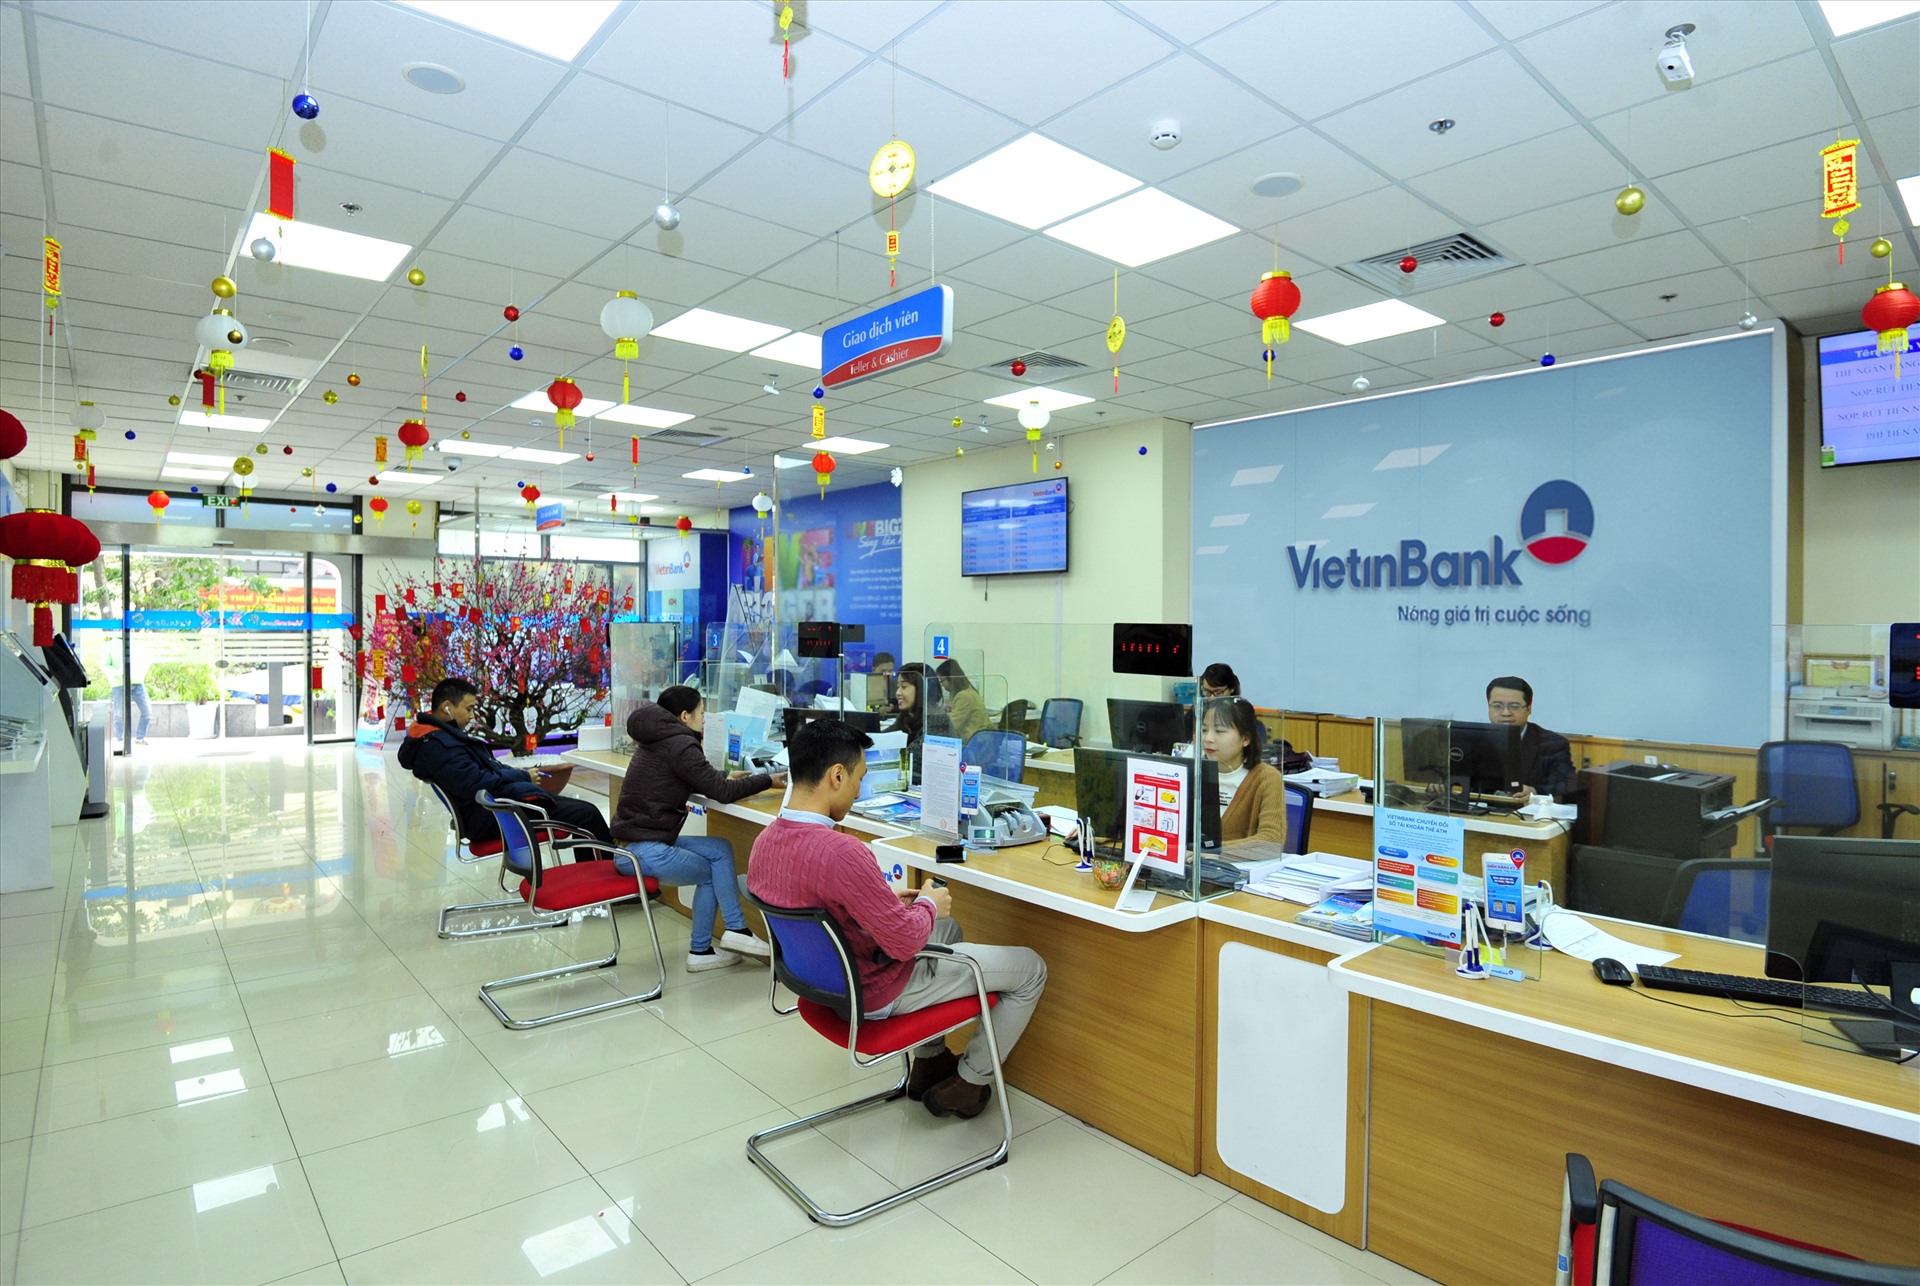 Tại các phòng giao dịch của VietinBank, khách hàng được hướng dẫn thủ tục mở tài khoản số đẹp đơn giản và nhanh chóng.